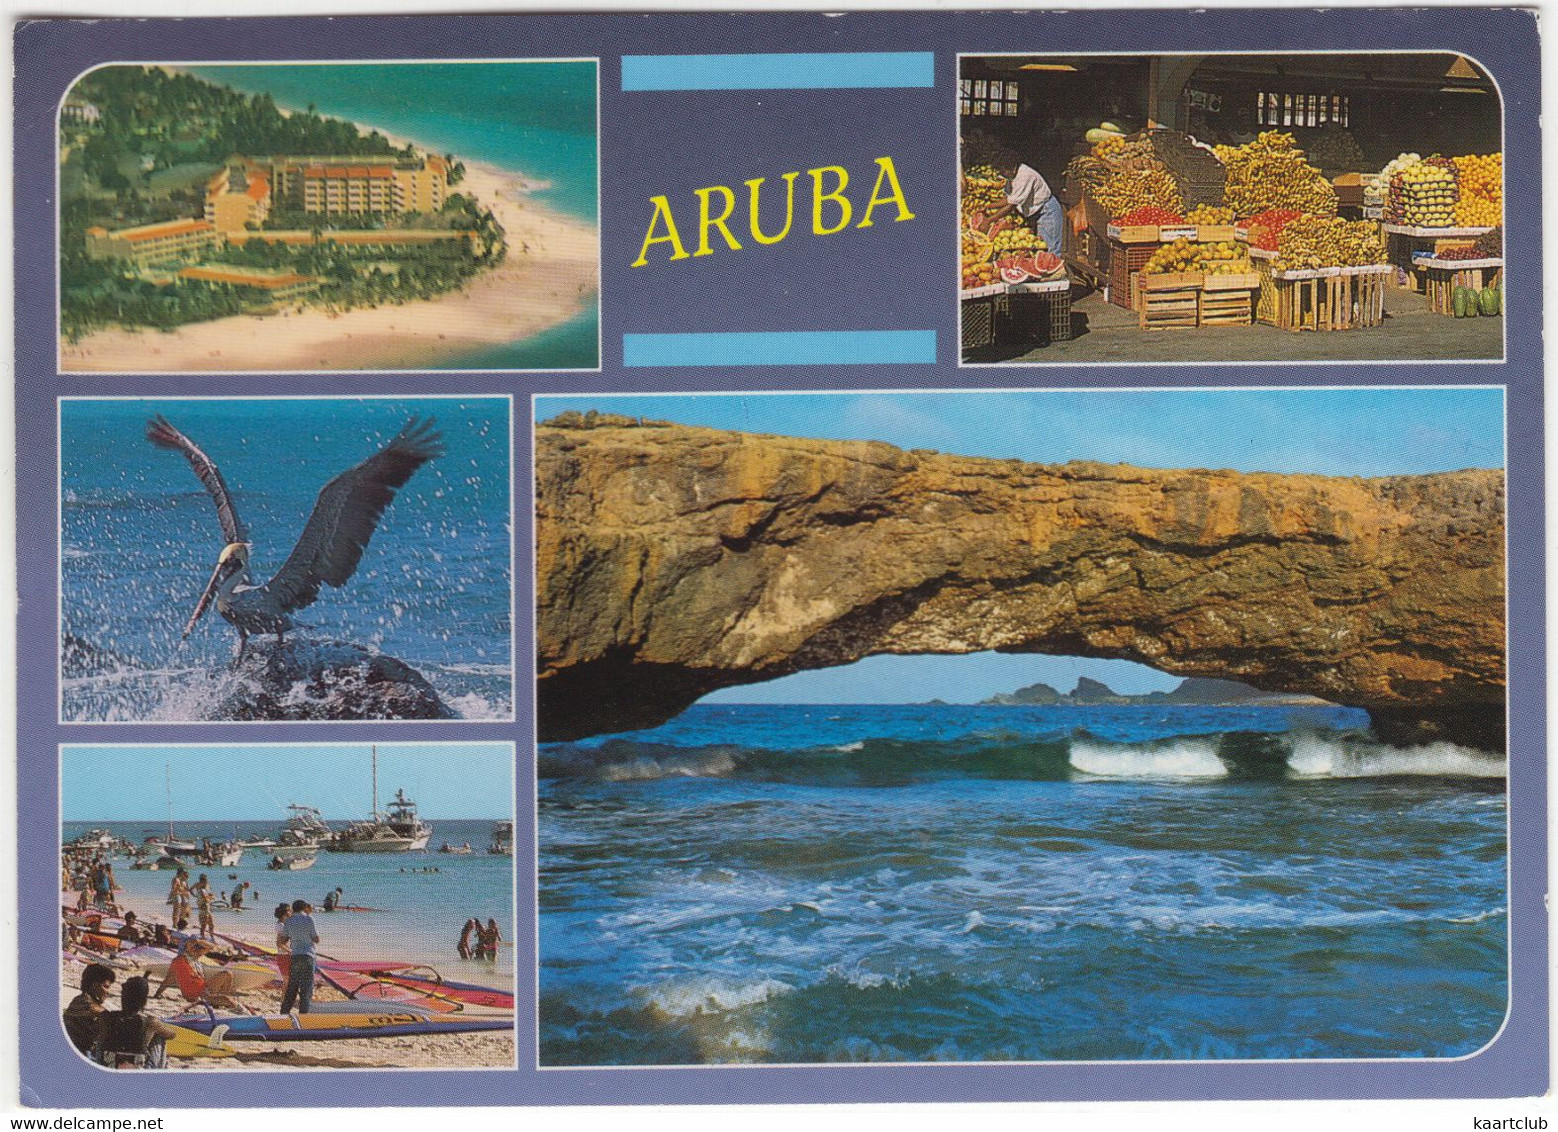 Aruba - A View Selection Of The Island - Aruba